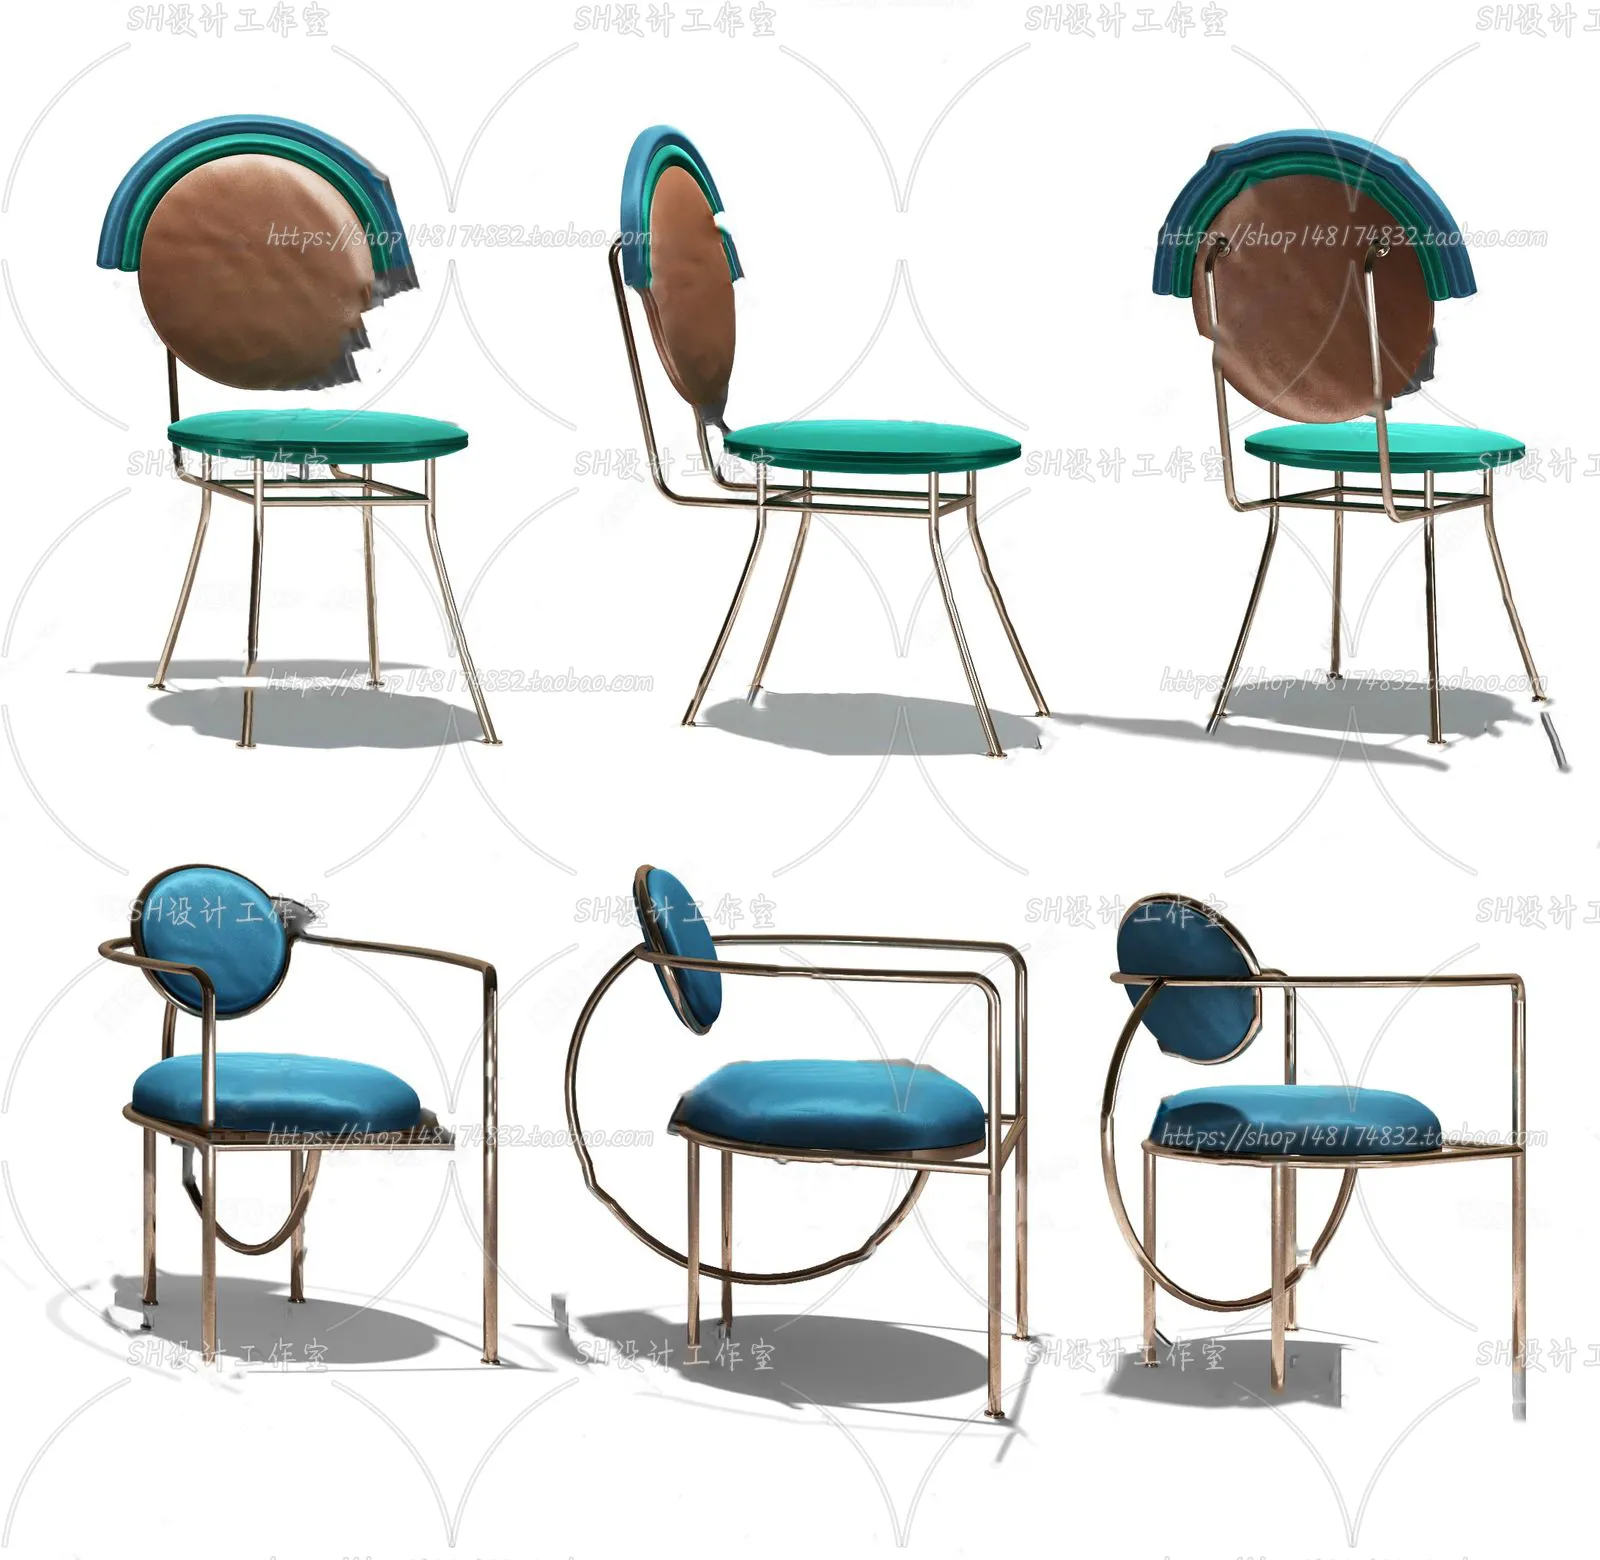 Chair – Single Chair 3D Models – 1994